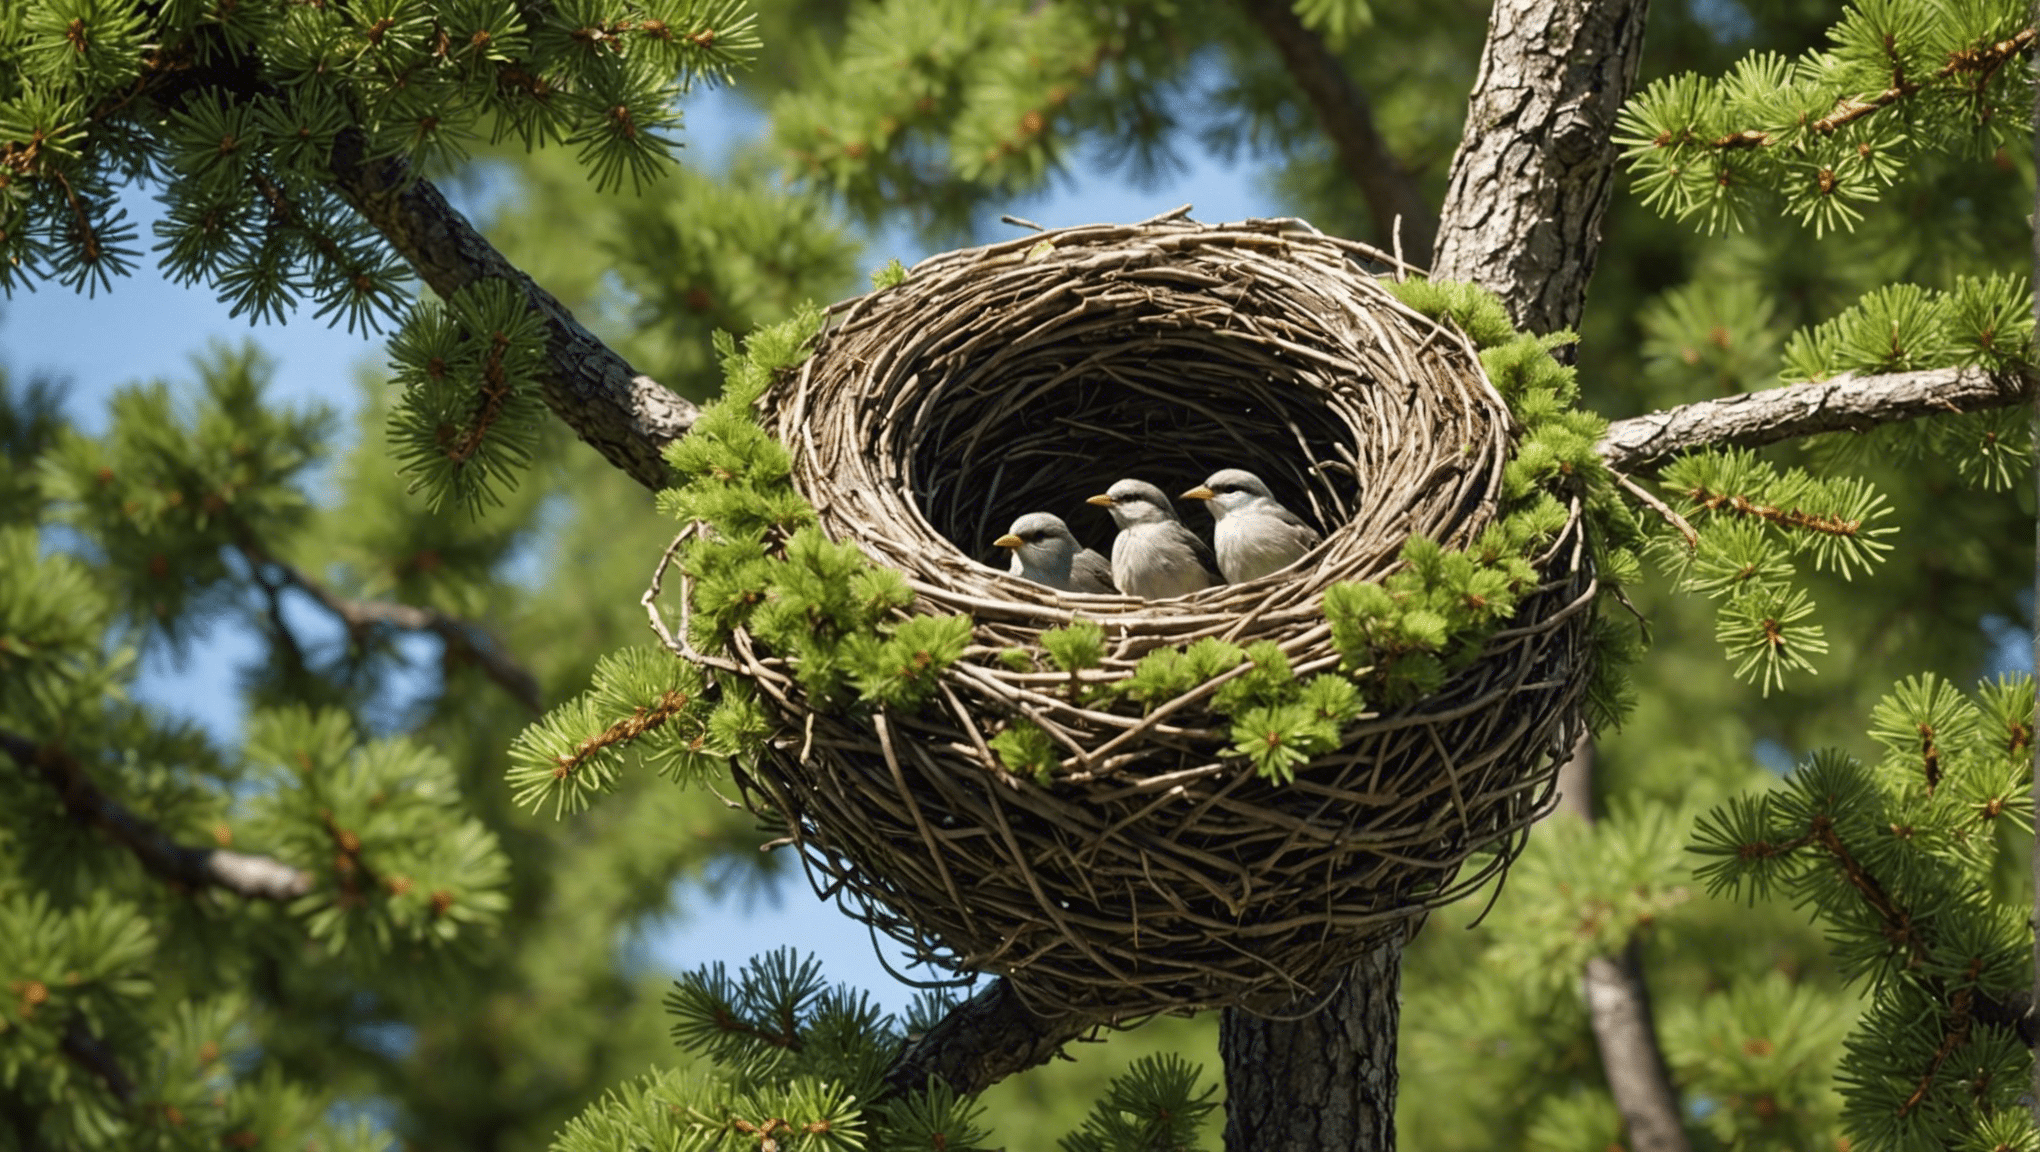 descubra o que torna o ninho dos pássaros tão único e atraente neste artigo informativo. aprenda sobre suas características e características distintivas que a diferenciam de outras árvores.